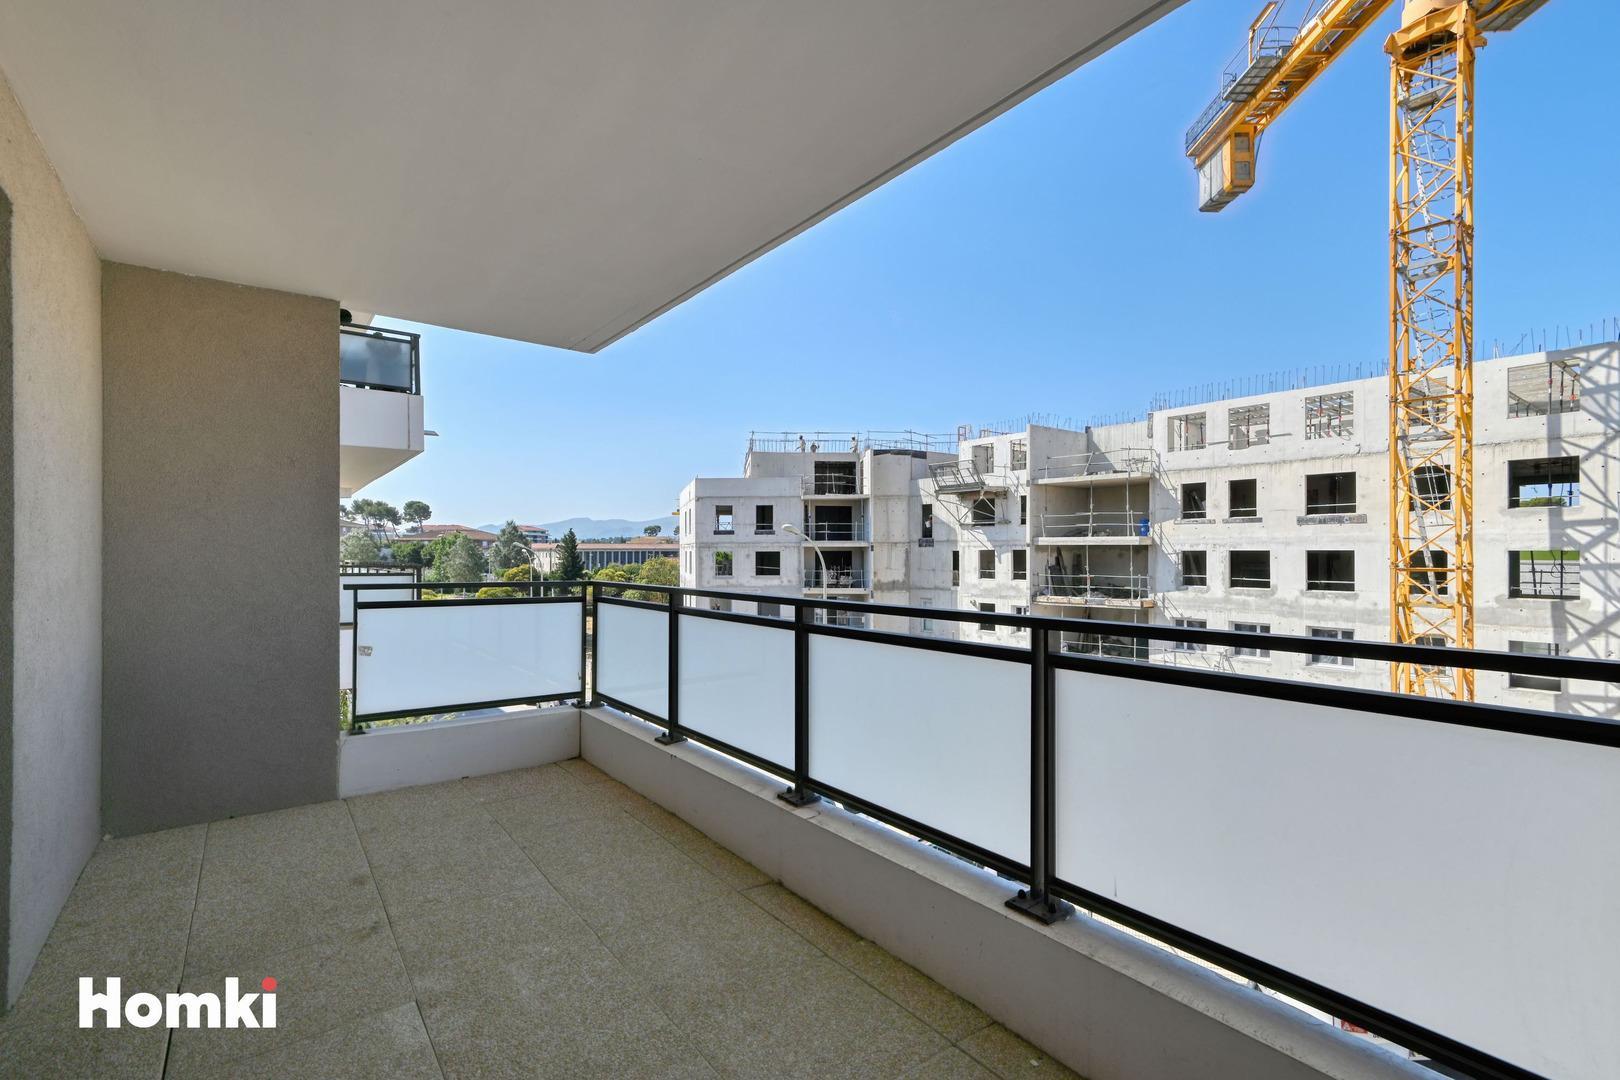 Homki - Vente Appartement  de 50.0 m² à Marseille 13013